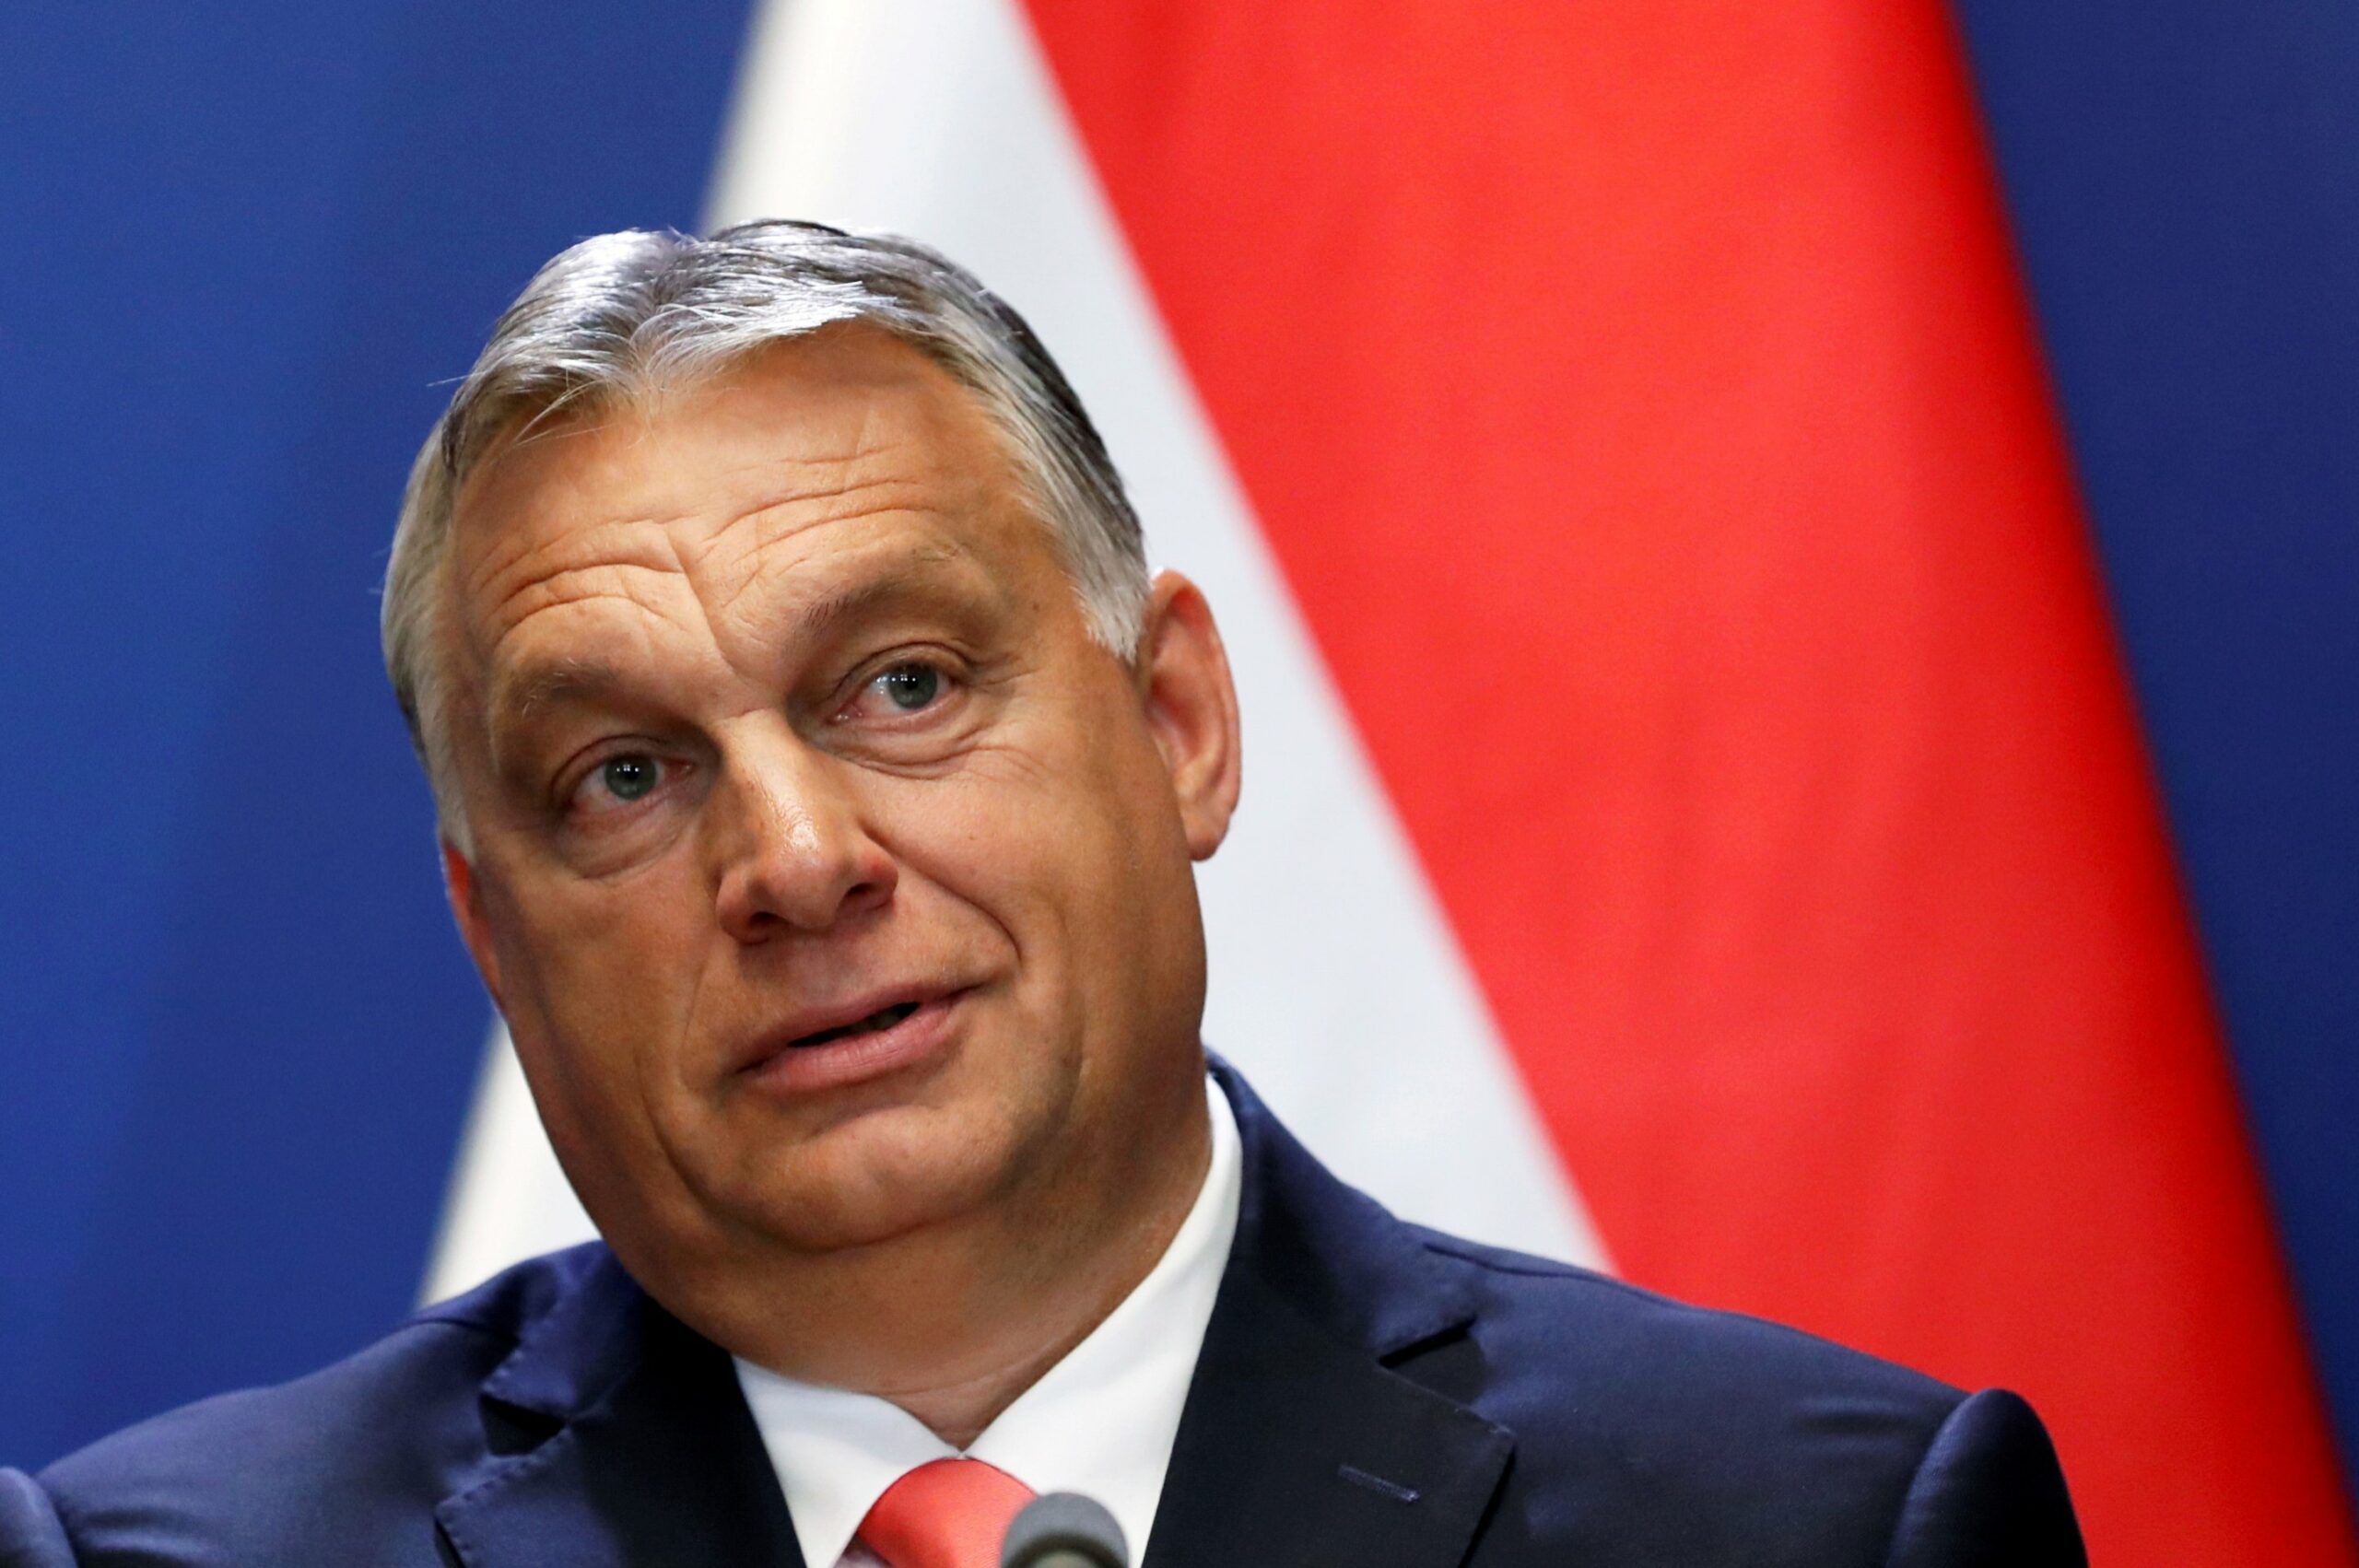 Presa maghiară îl desființează pe Viktor Orban